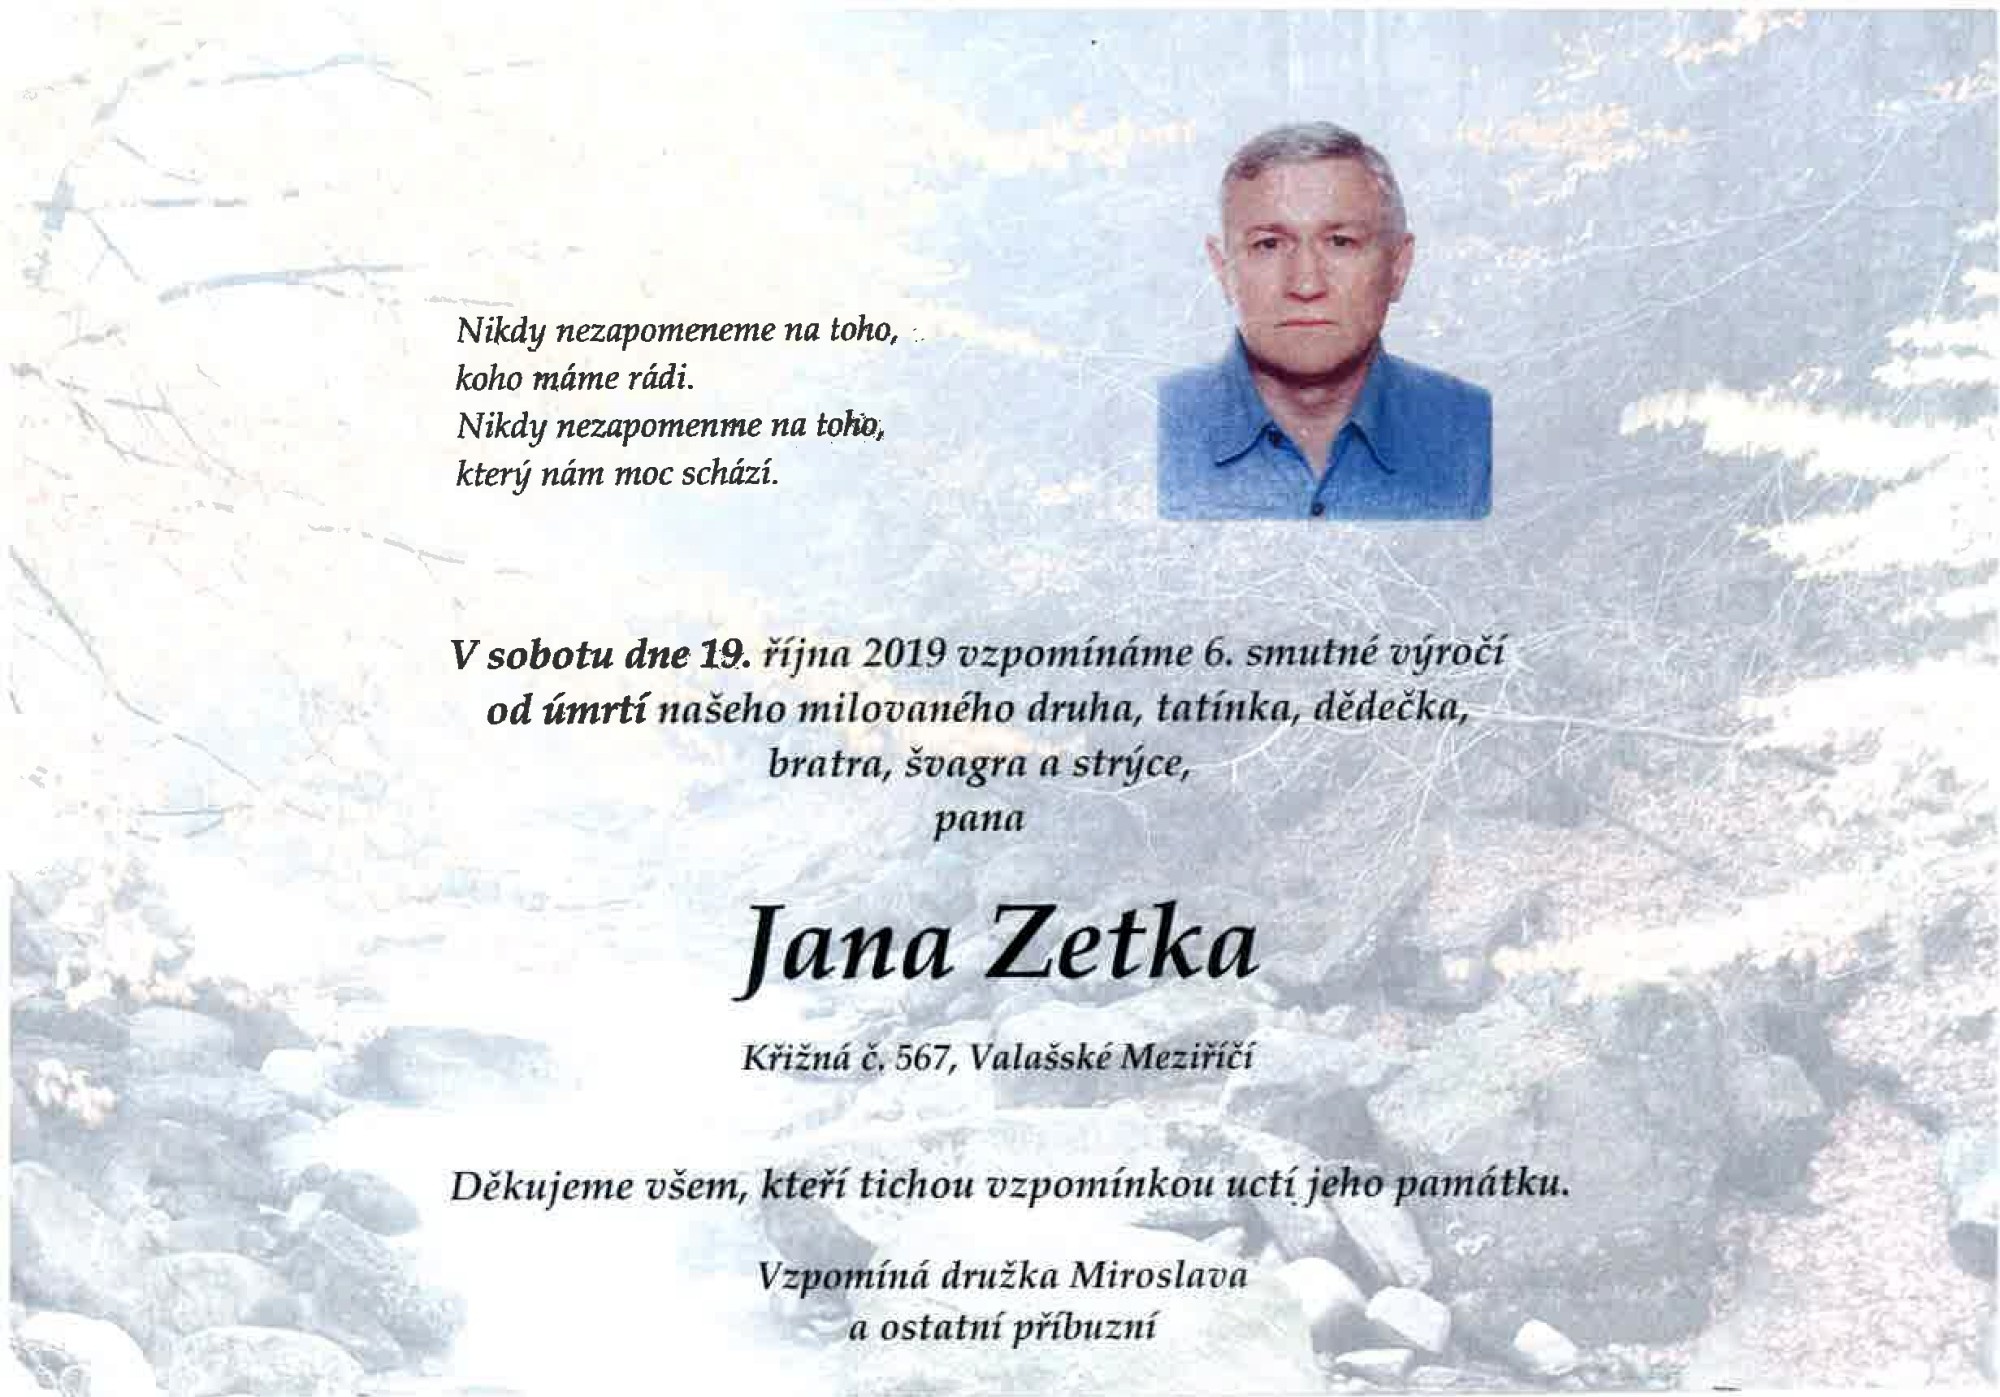 Jan Zetek